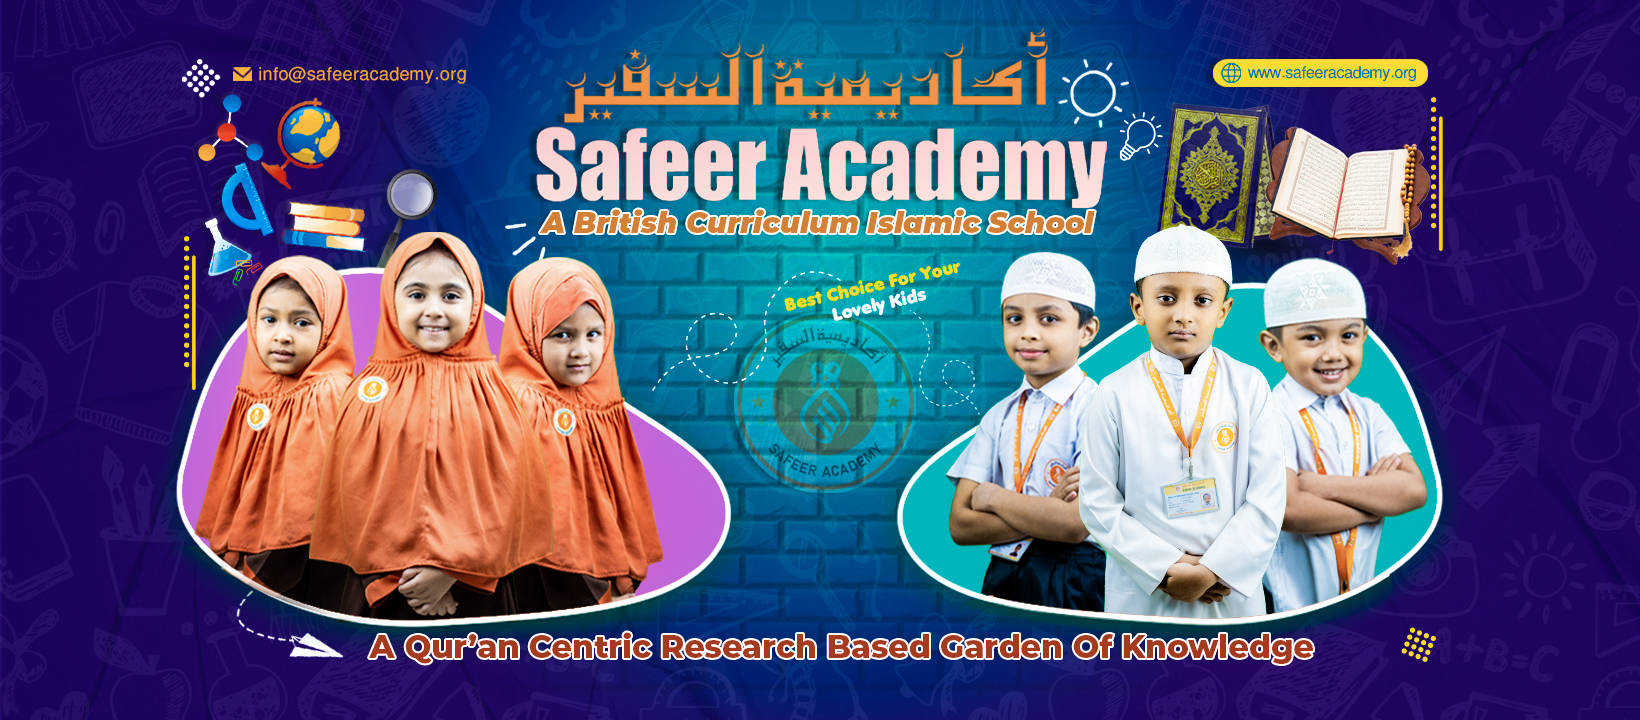 Safeer Academy